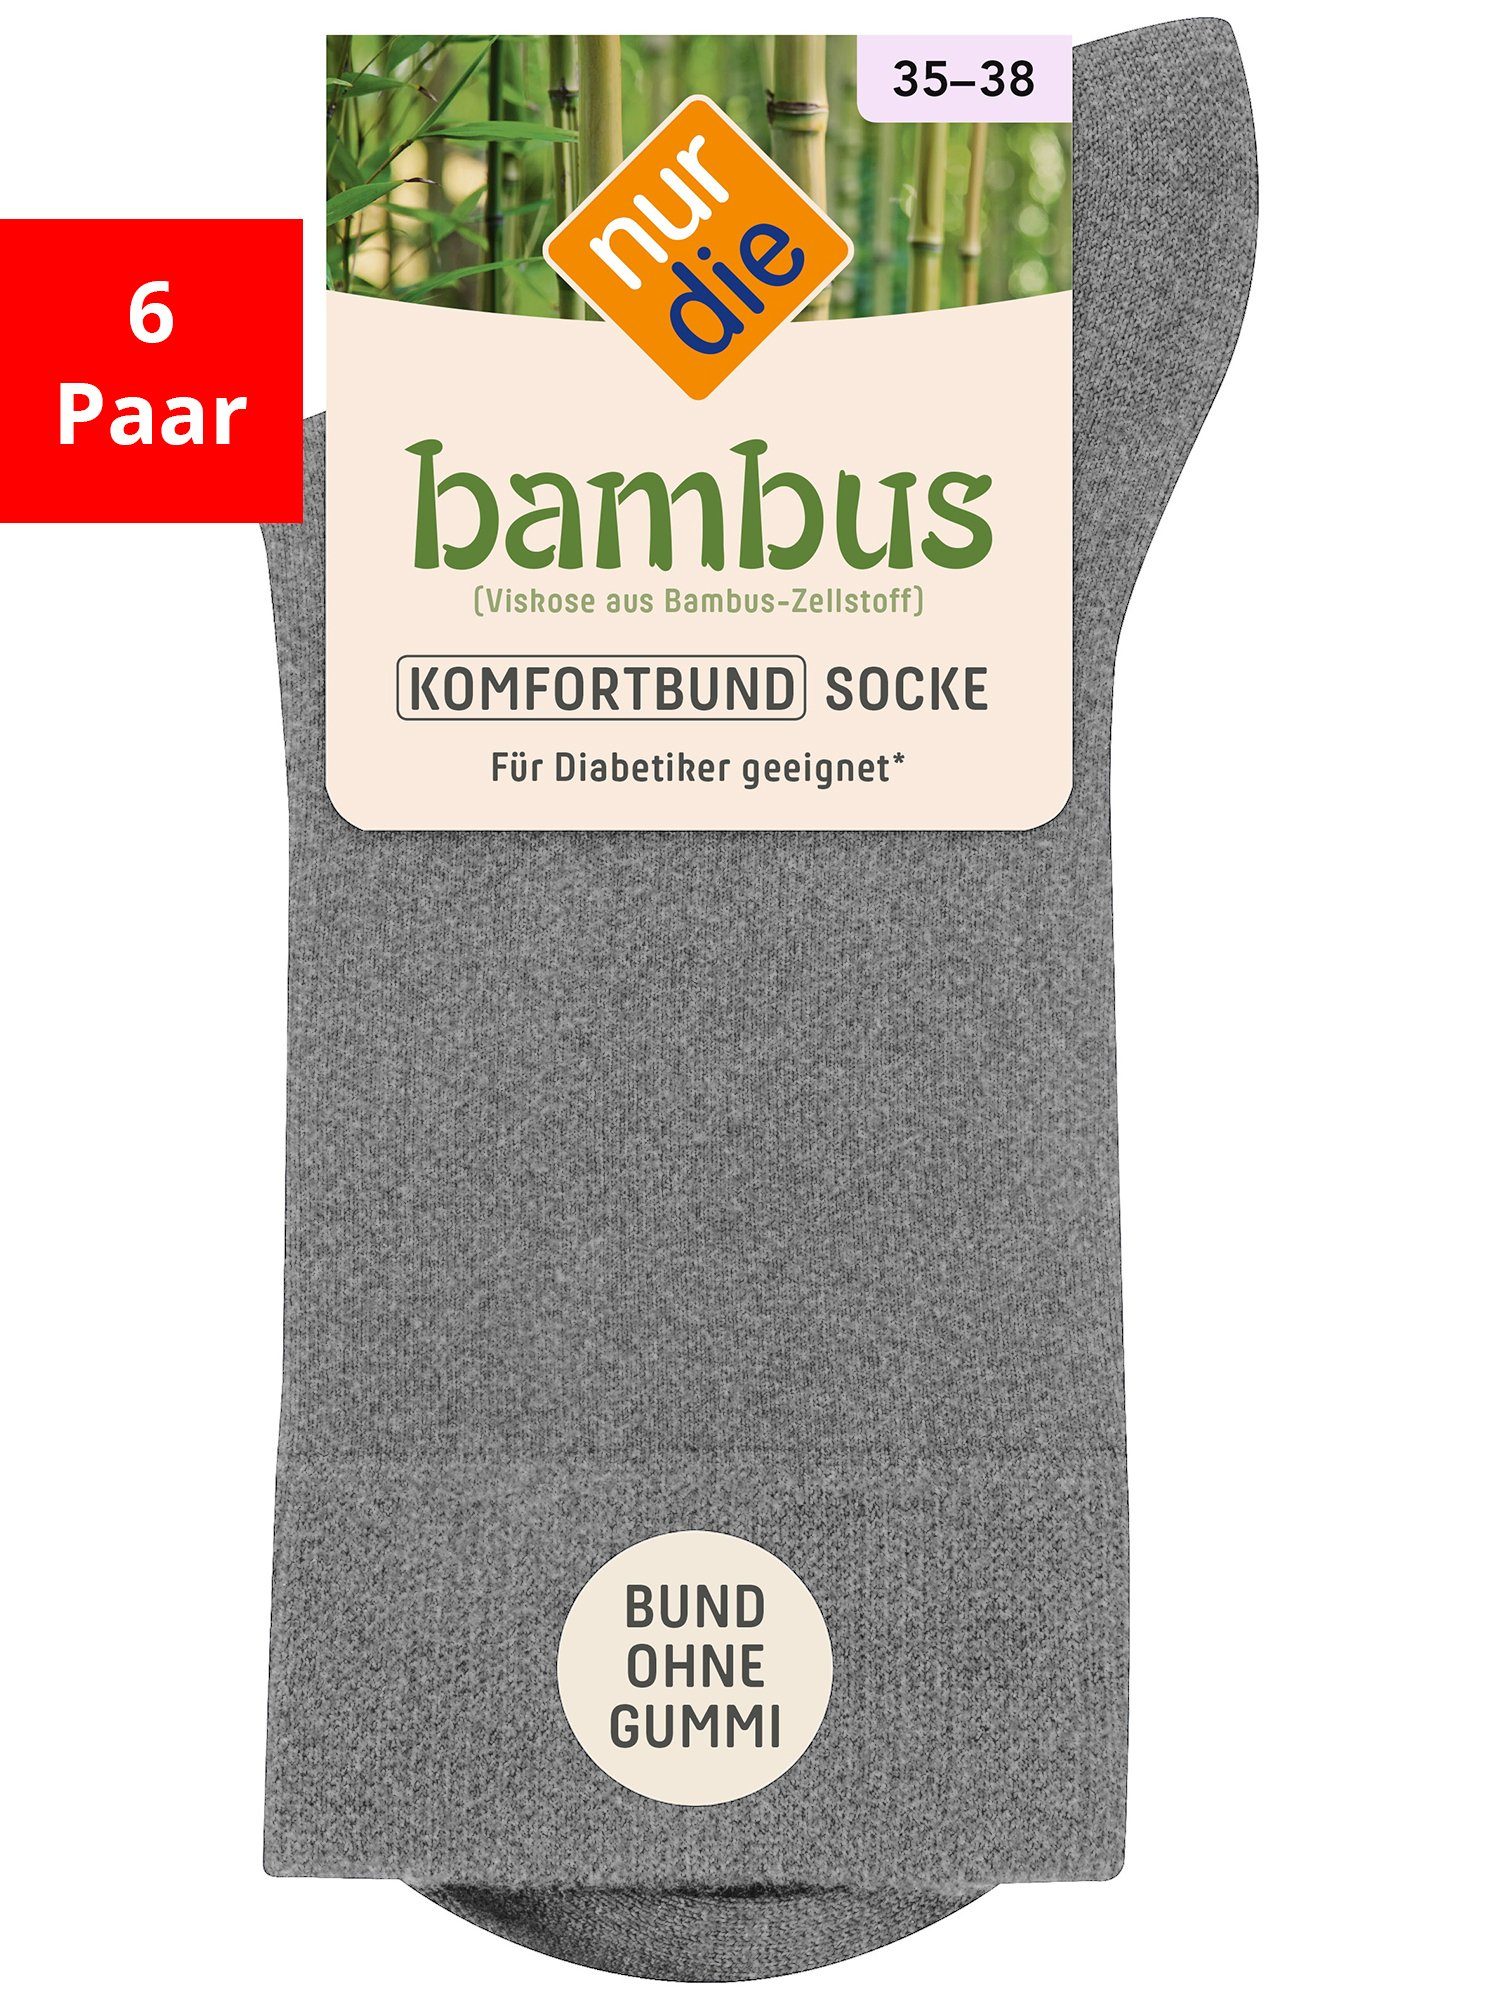 Nur Die Basicsocken Bambus Komfort - Im 6-Pack hellgraumel.